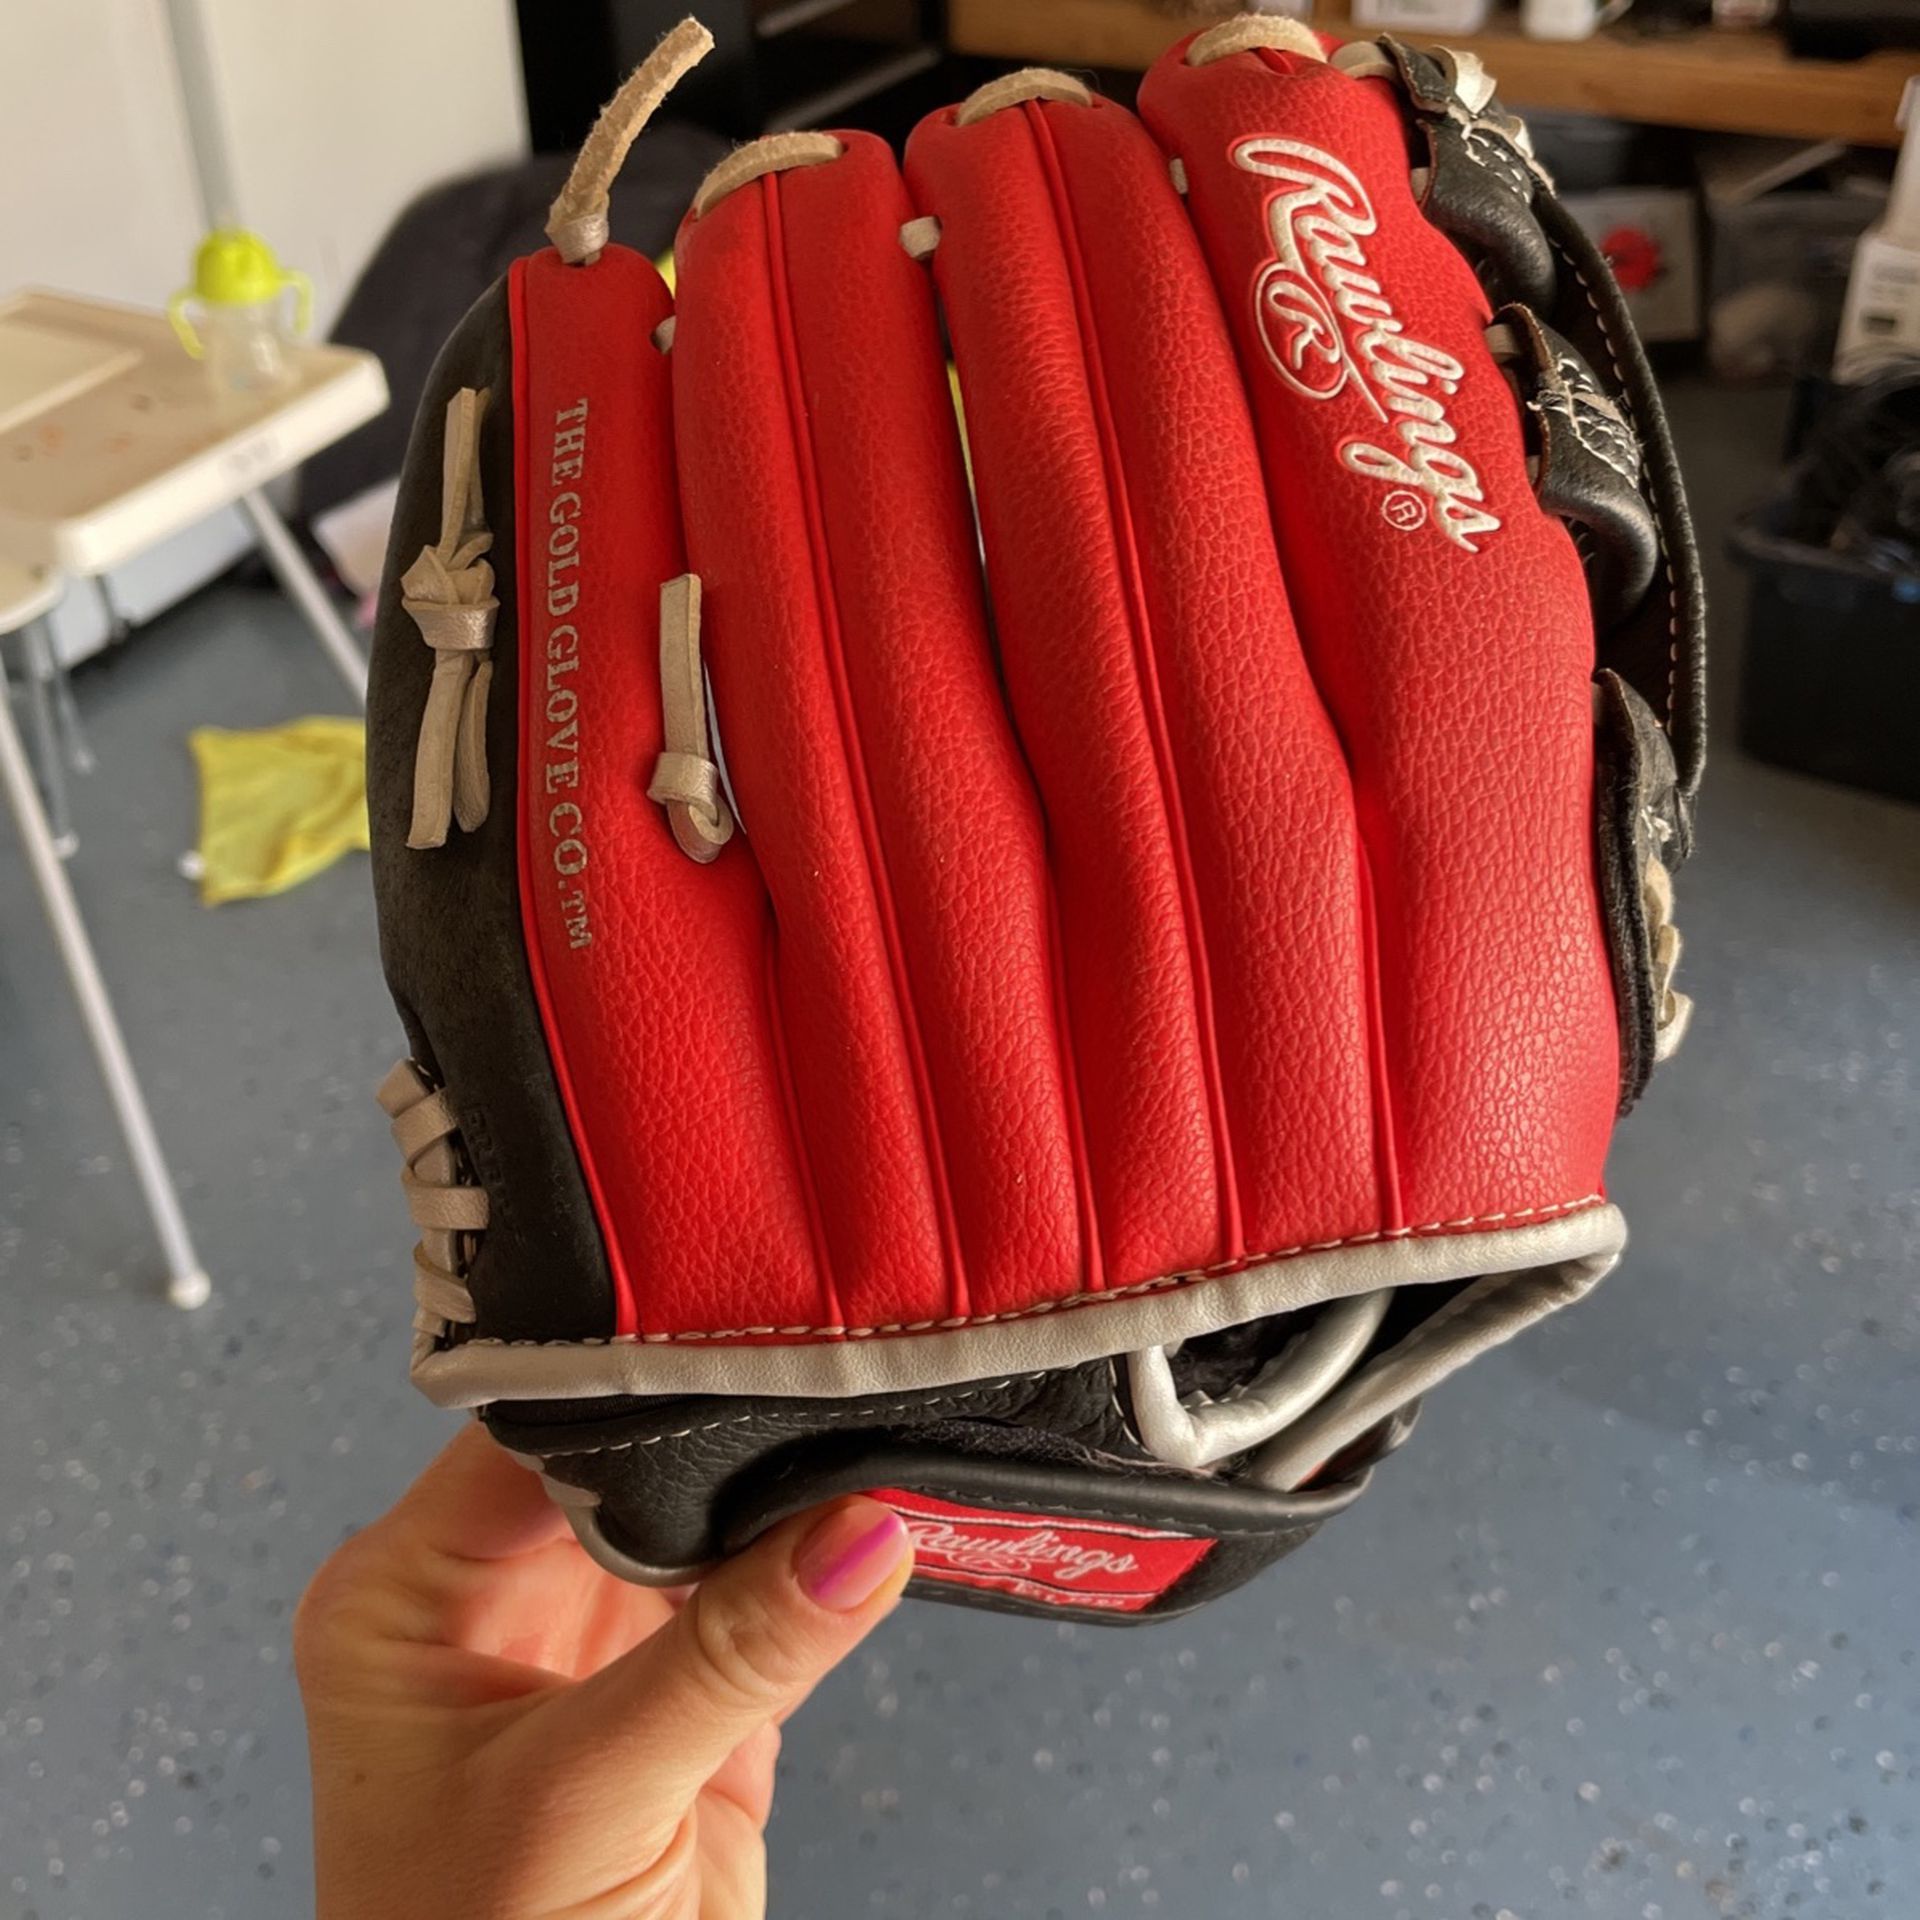 Rawlings Glove